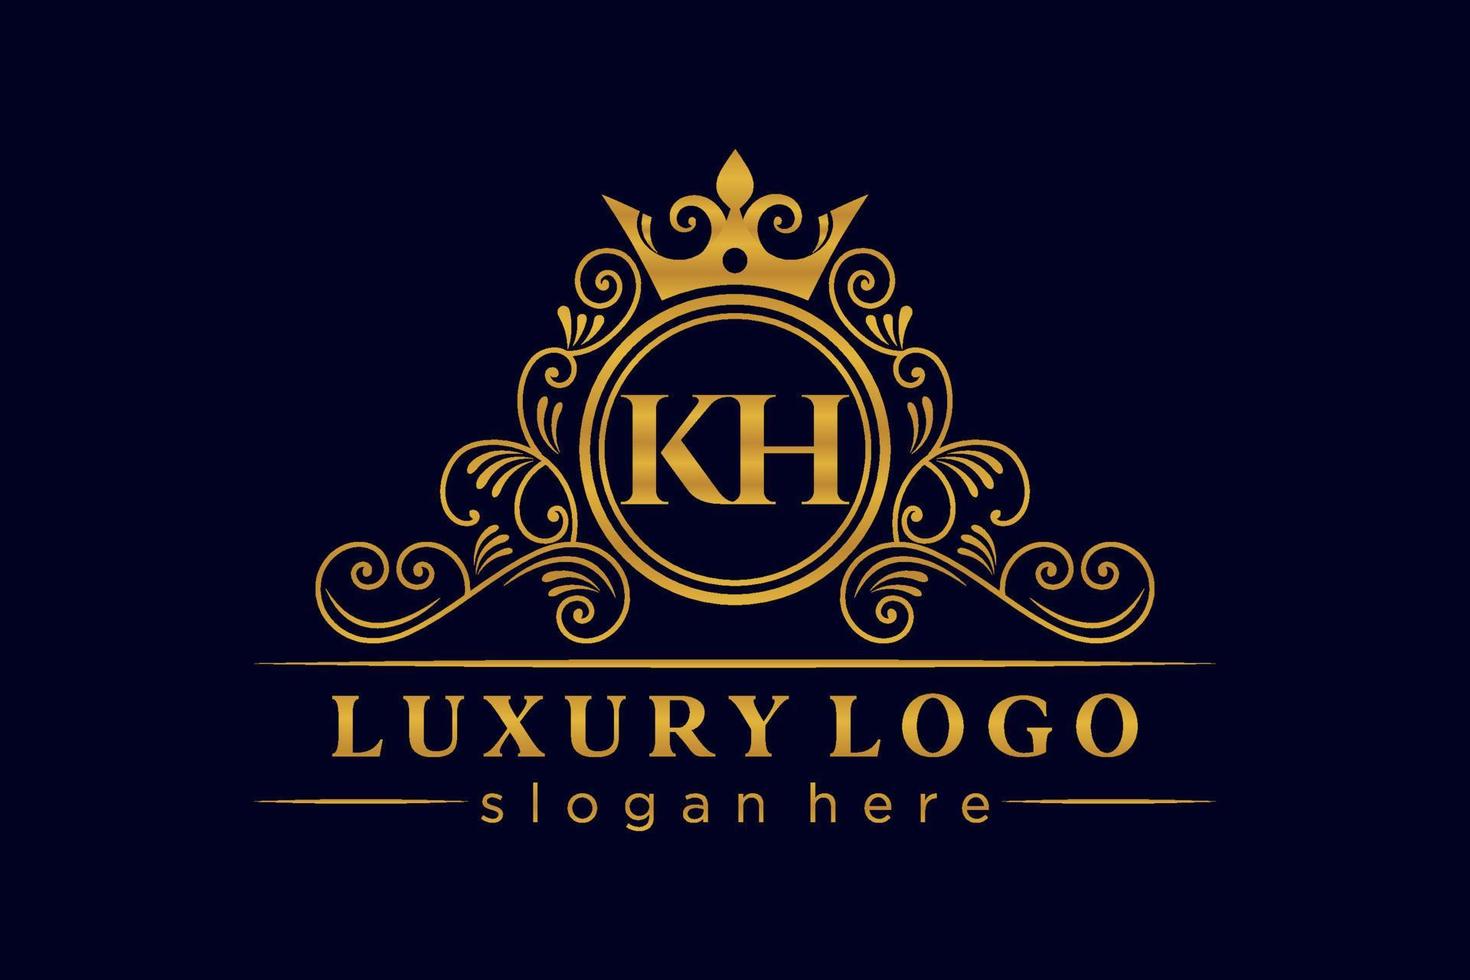 KH Initial Letter Gold calligraphic feminine floral hand drawn heraldic monogram antique vintage style luxury logo design Premium Vector